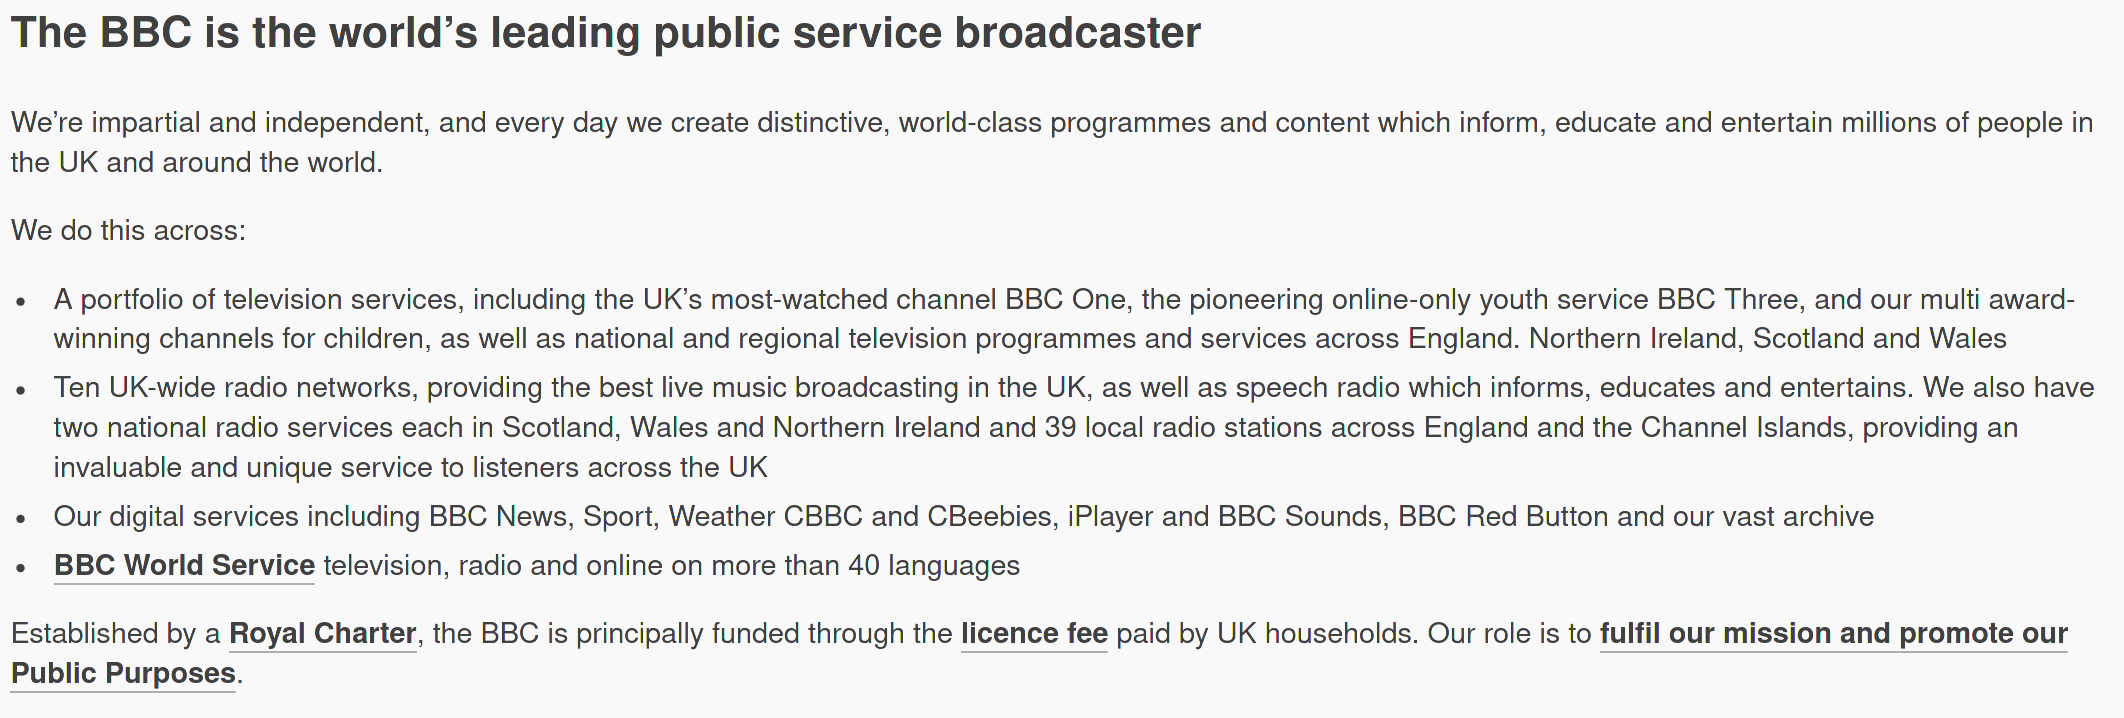 BBC information, part 1